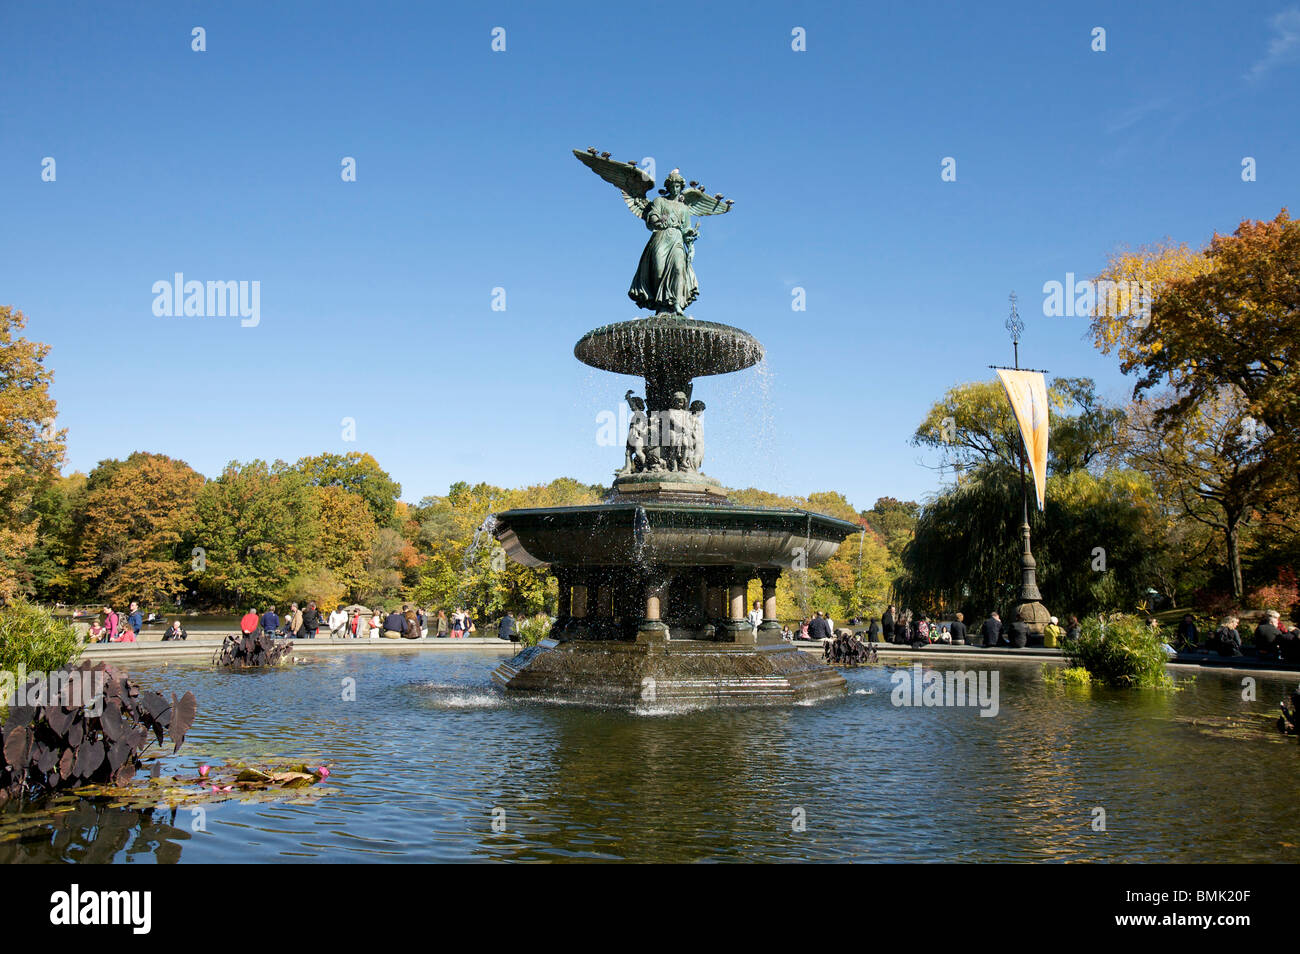 Bethesda Fountain, Central Park, New York City. Die Skulptur ist Angel of Waters zu nennen und wurde im Jahre 1873 von Emma Stebbins entworfen. Stockfoto